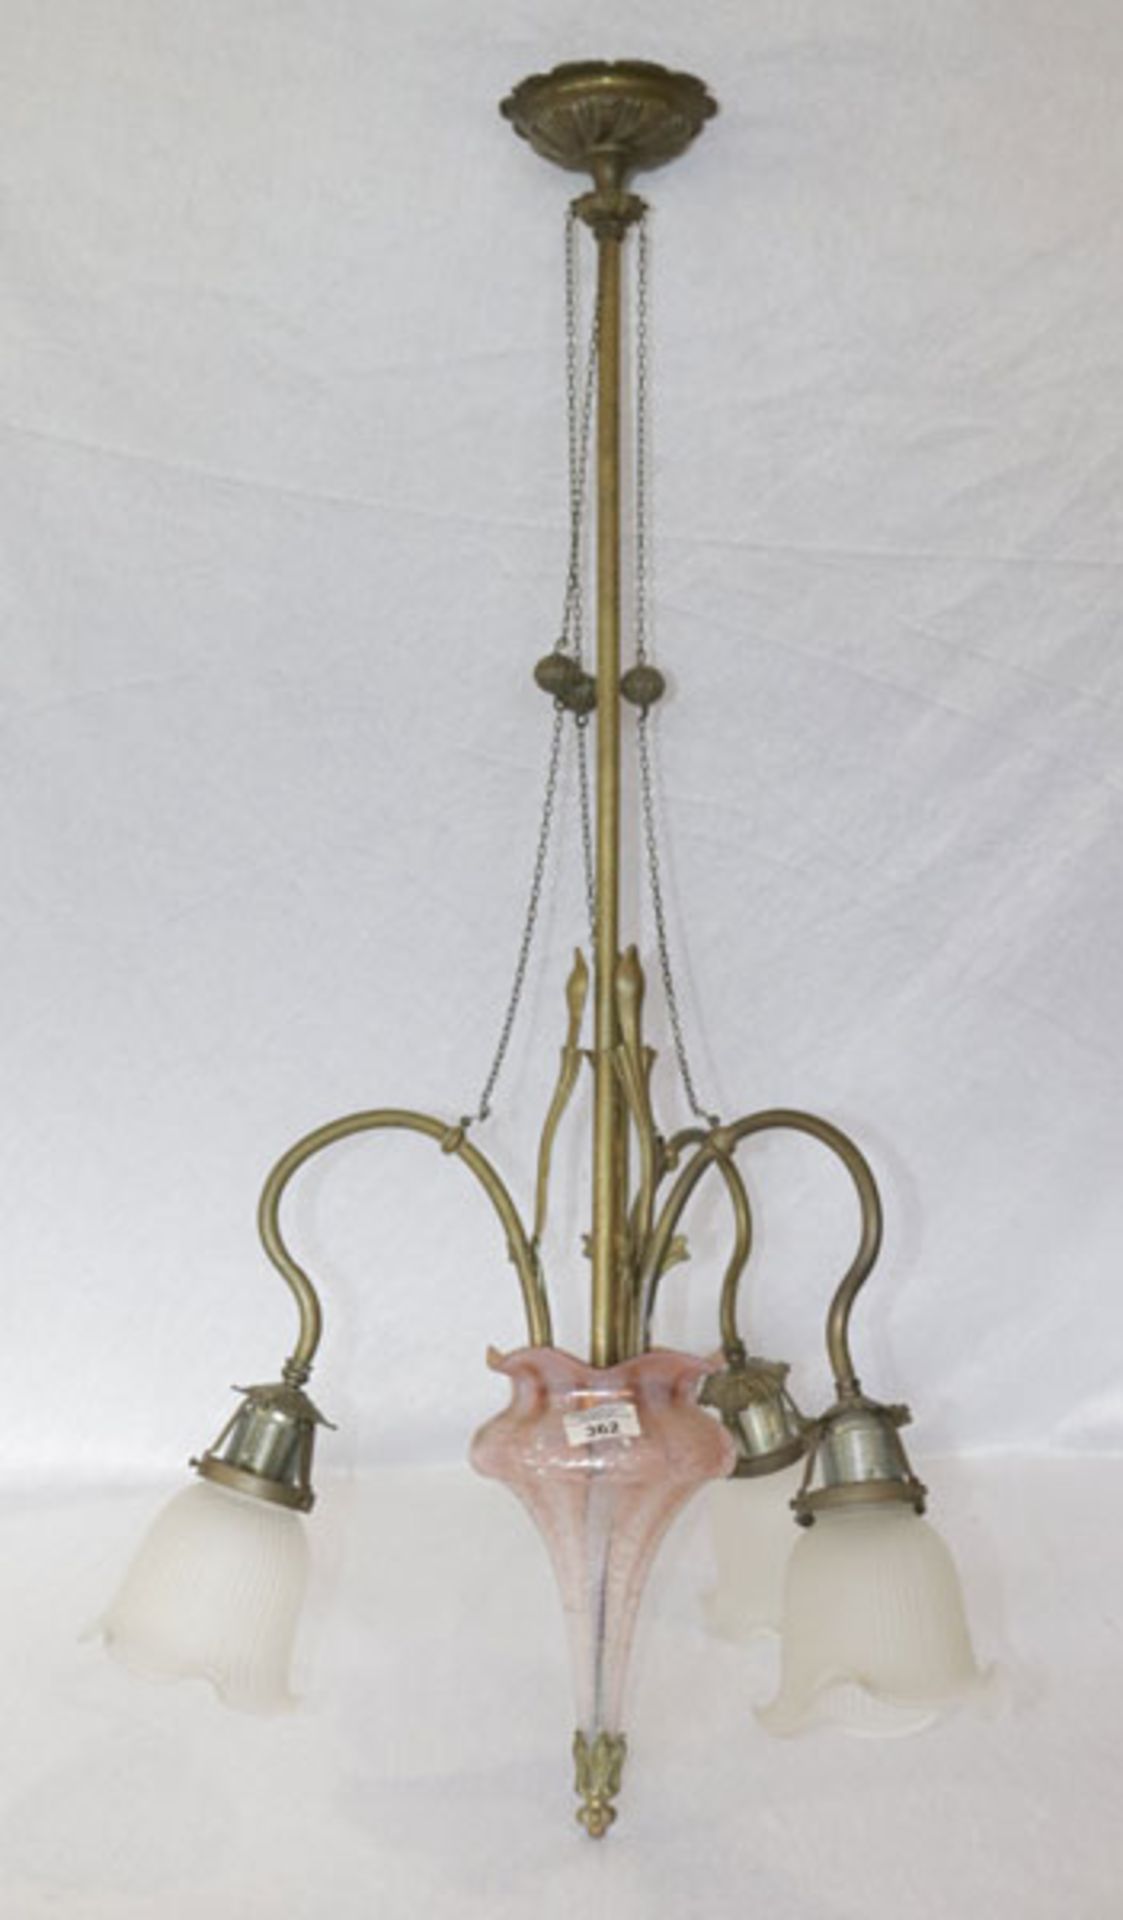 Metall/Glas Hängelampe, 3-armig mit 3 Glasblütenschirmchen, H 116 cm, D ca. 66 cm, Alters- und Gebra